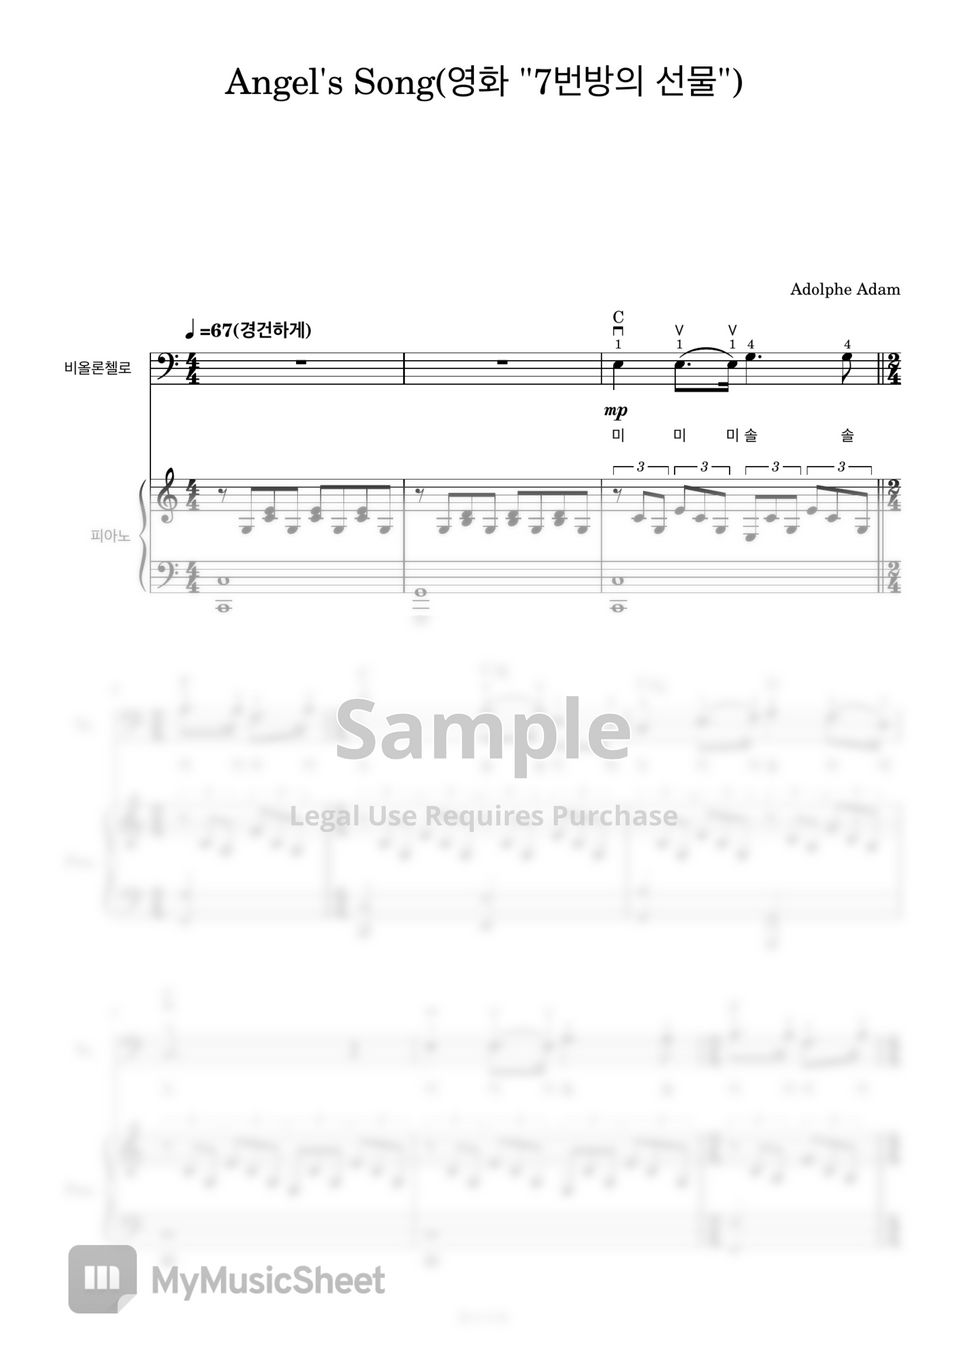 Adolphe Adam - Angel’s Song (첼로+피아노, 계이름 & 손가락 번호 포함) by 첼로마을